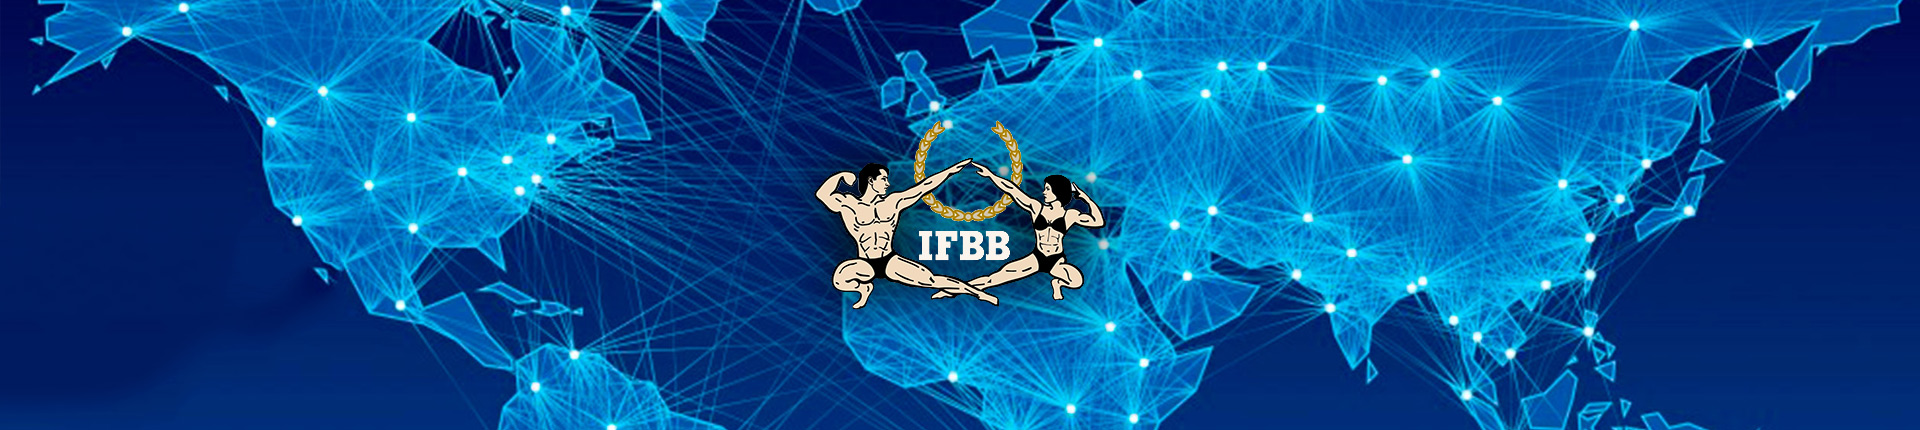 Złote medale MŚ Juniorów IFBB 2019!